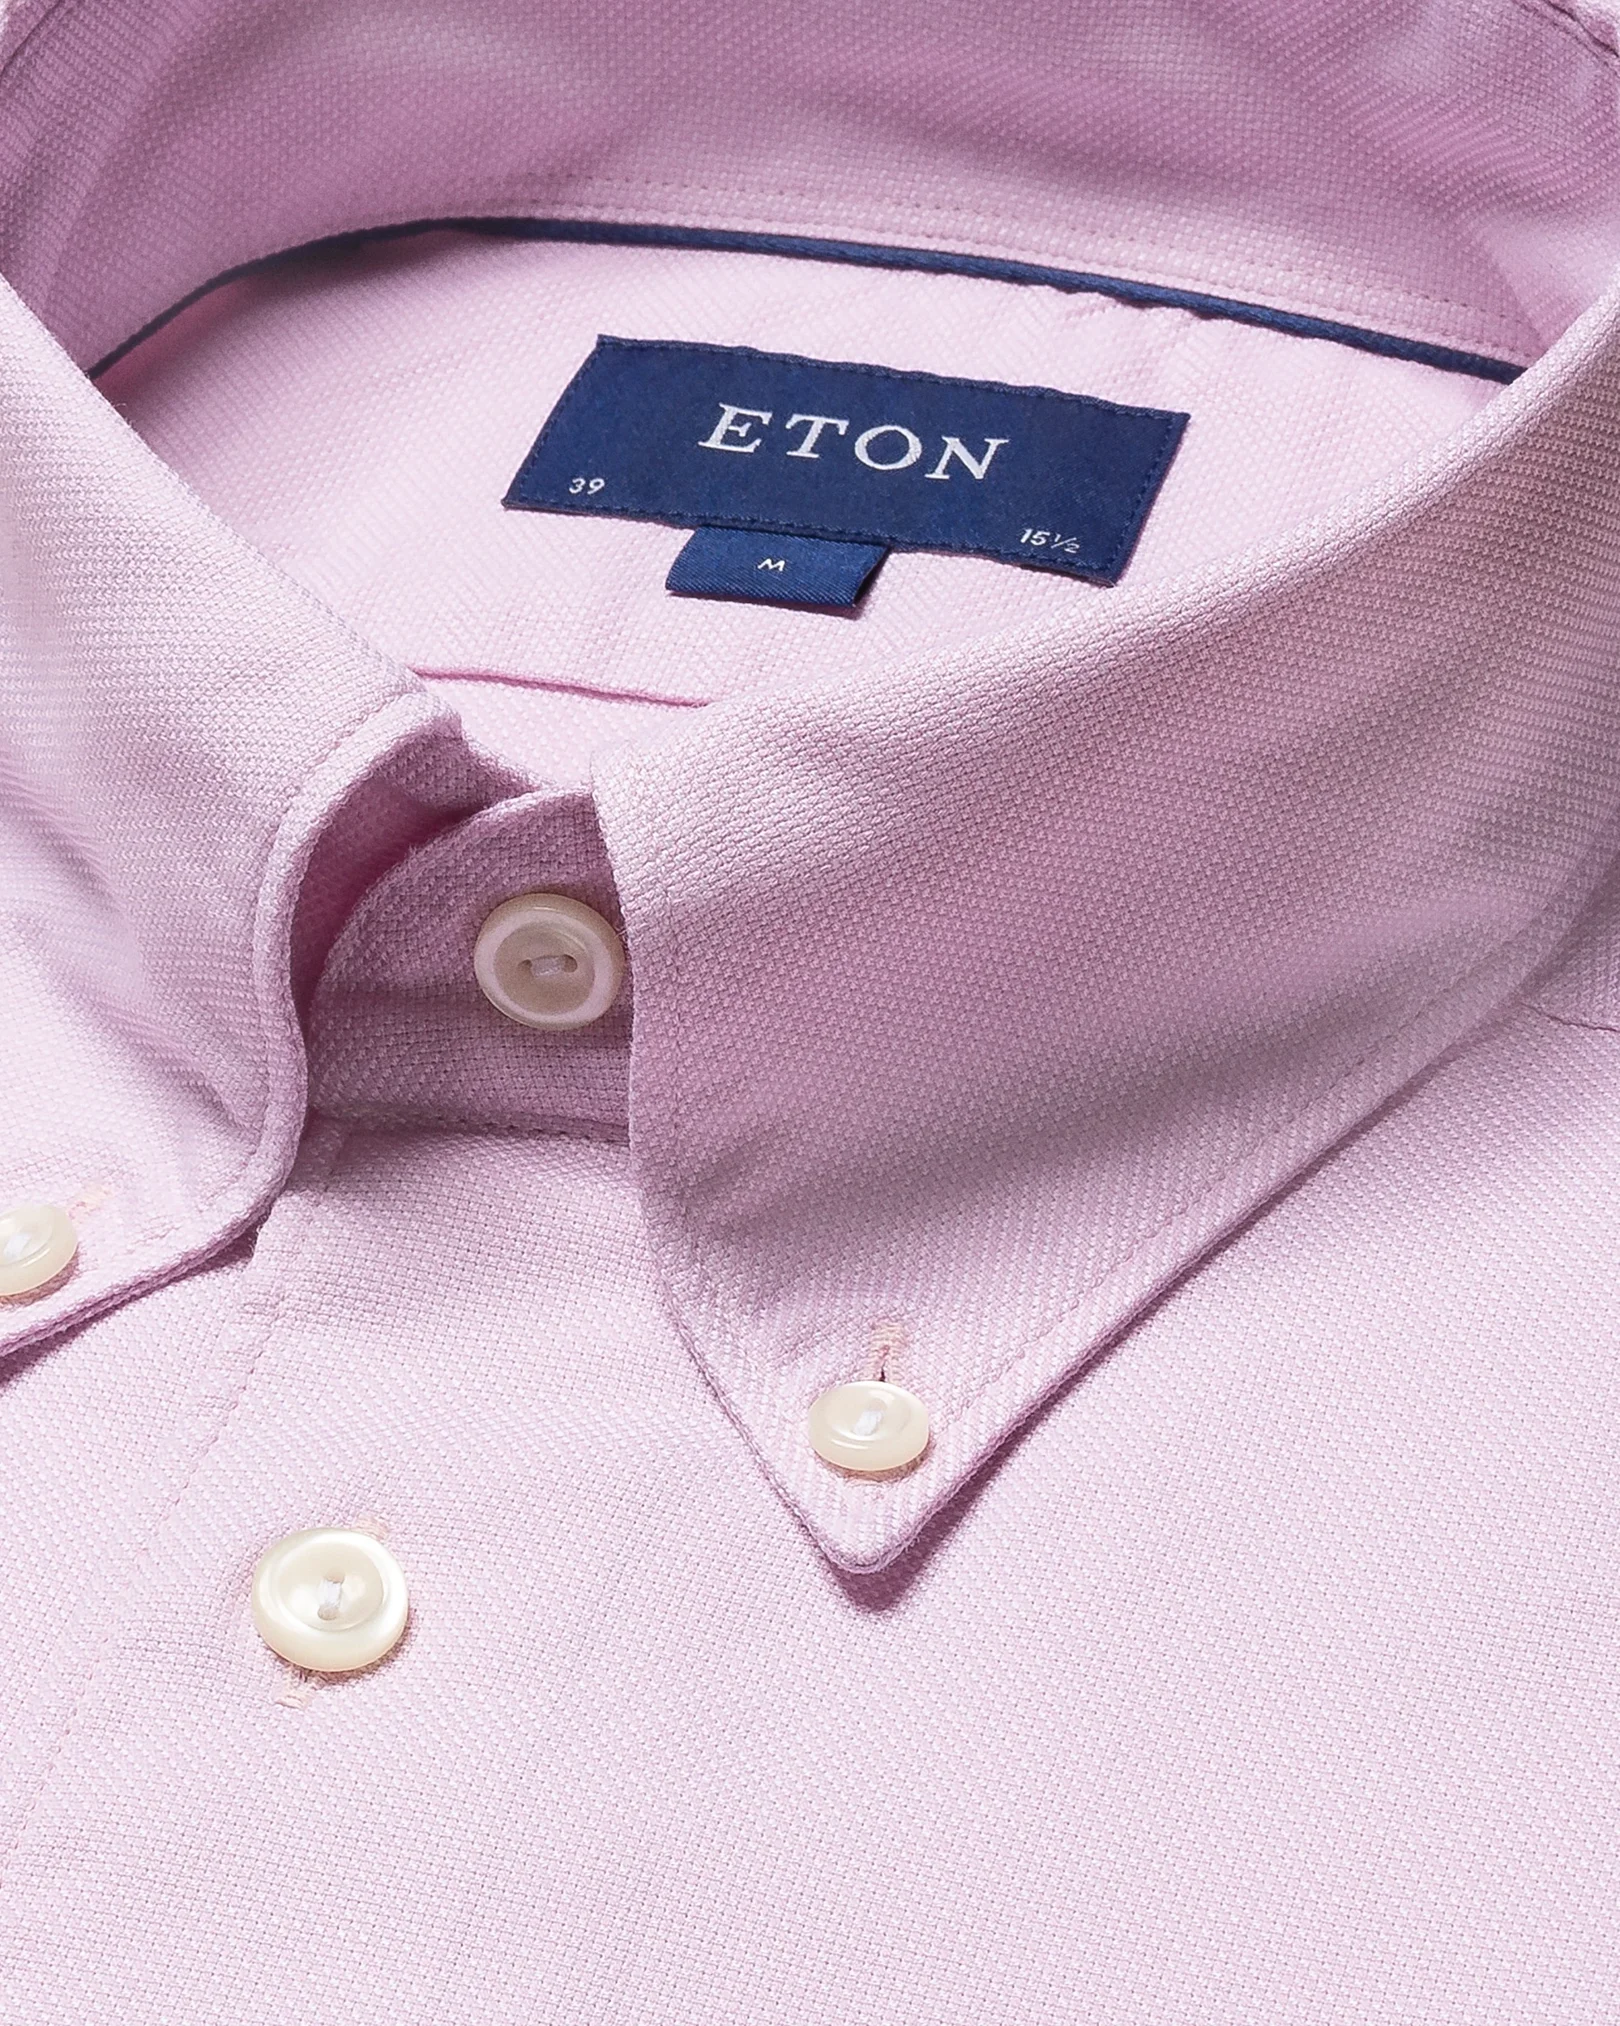 Eton - pink royal oxford tencel